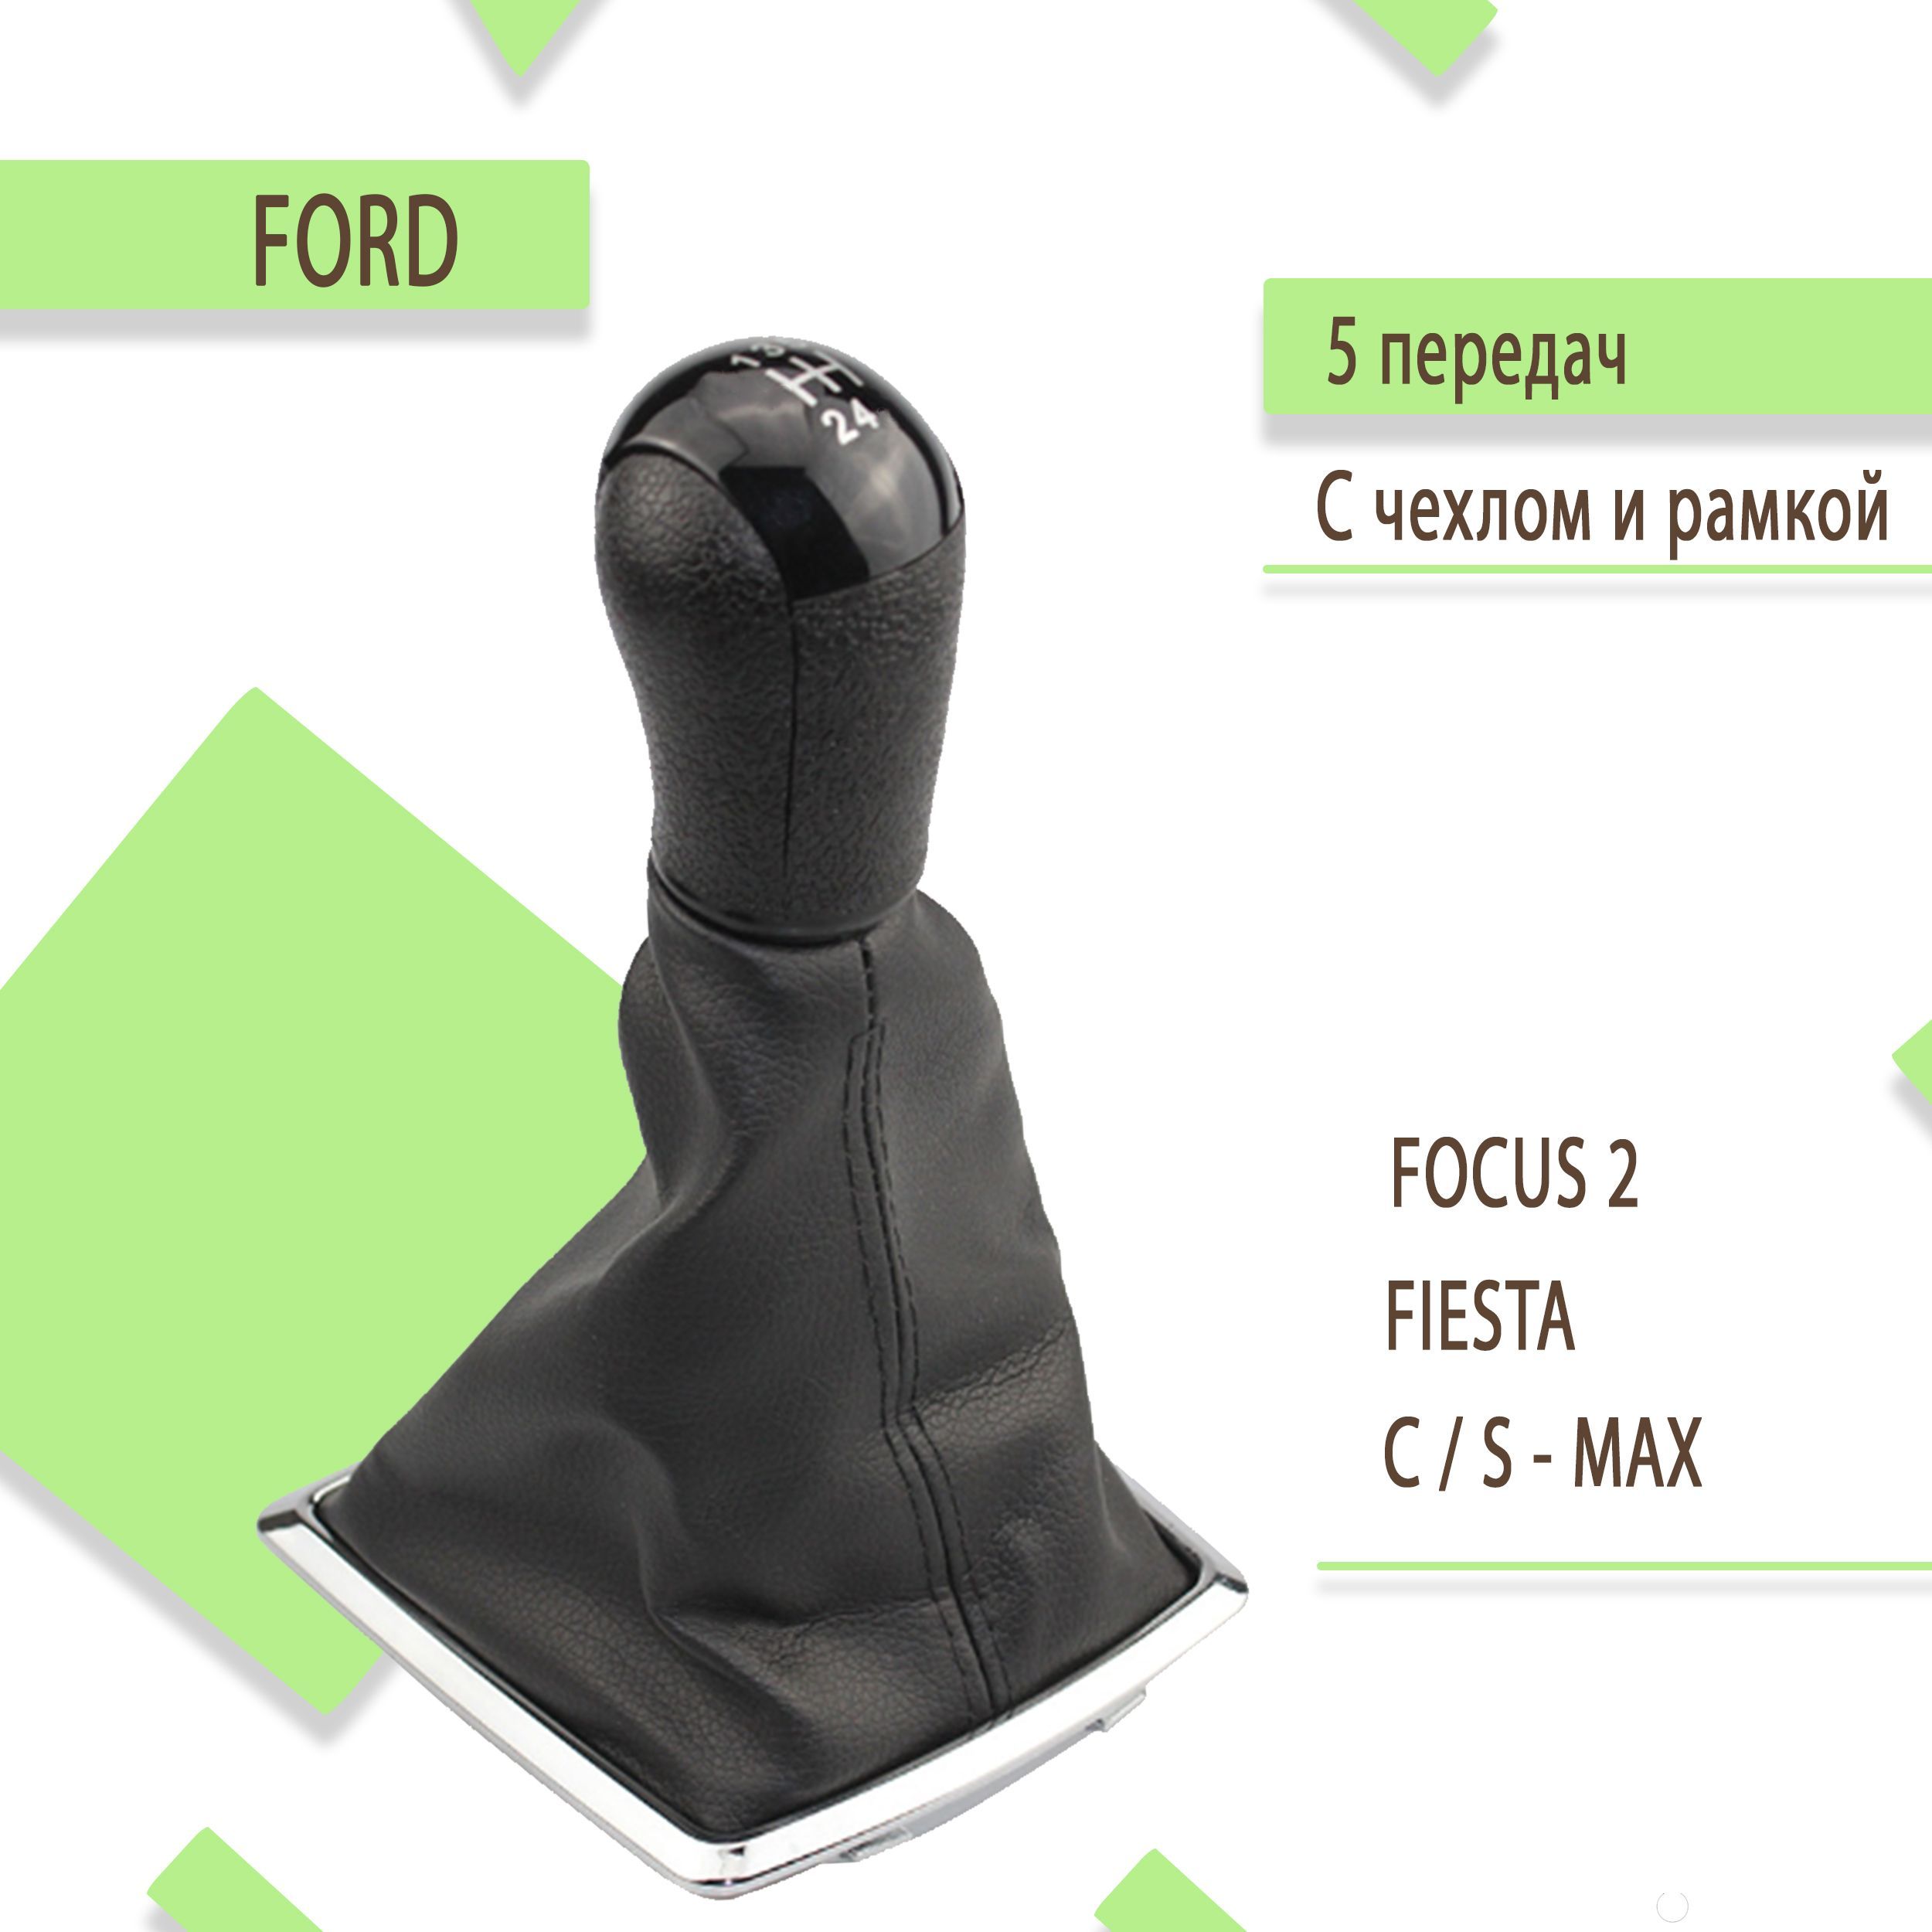 Ford Focus первого поколения: стоимость владения и ремонта